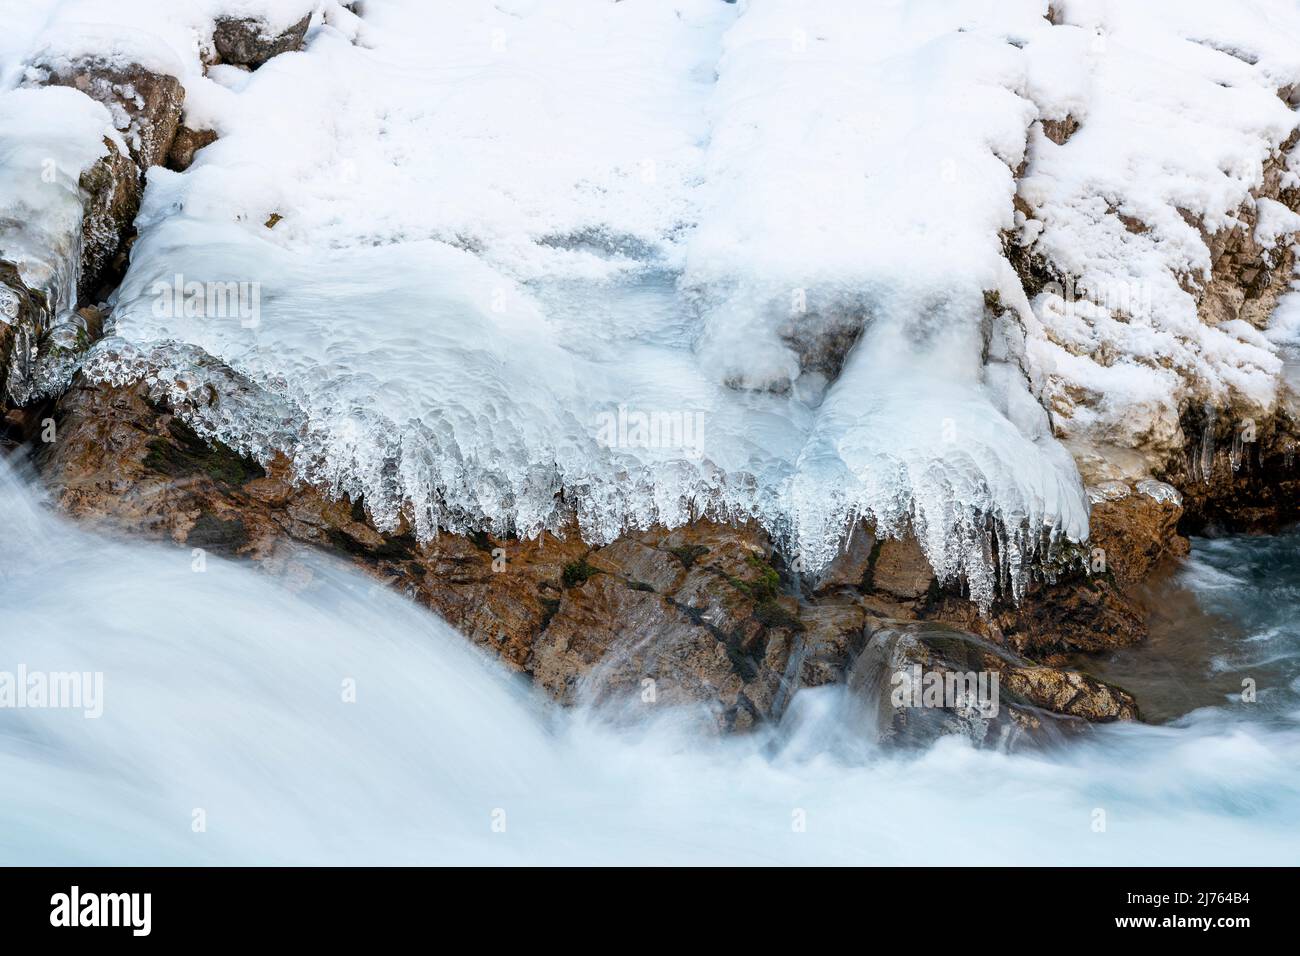 Schnelles Wasser des Rissbaches bildet Spray und Strom. Eisstrukturen und Felsen, die am Ufer des Gebirgsbaches gebildet werden, Grenzen das Bild ein. Aufgenommen im Winter in Tirol, Österreich im eng, nahe dem Ahornboden. Stockfoto